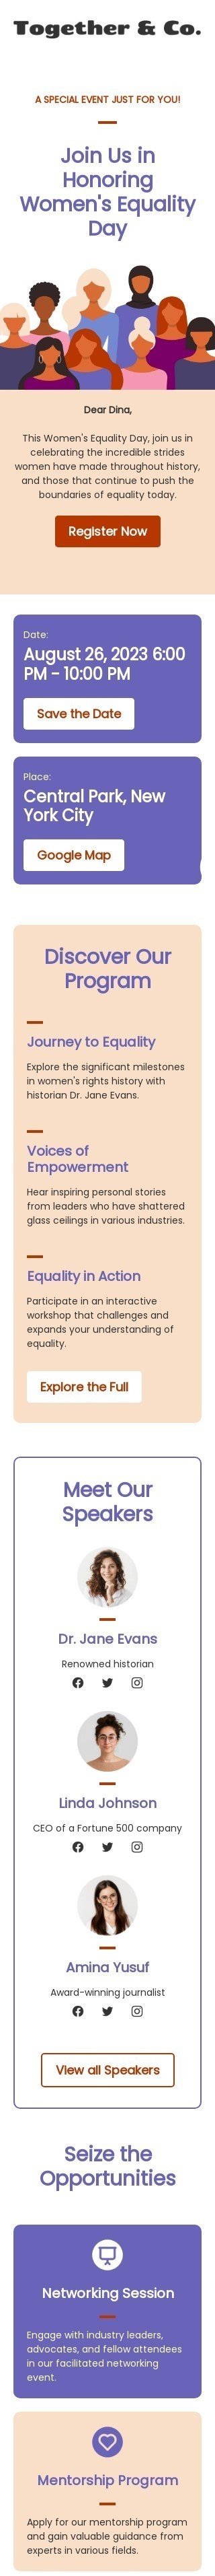 Шаблон письма к празднику День Равенства Женщин «Путь к равенству» для индустрии «Хобби» мобильный вид